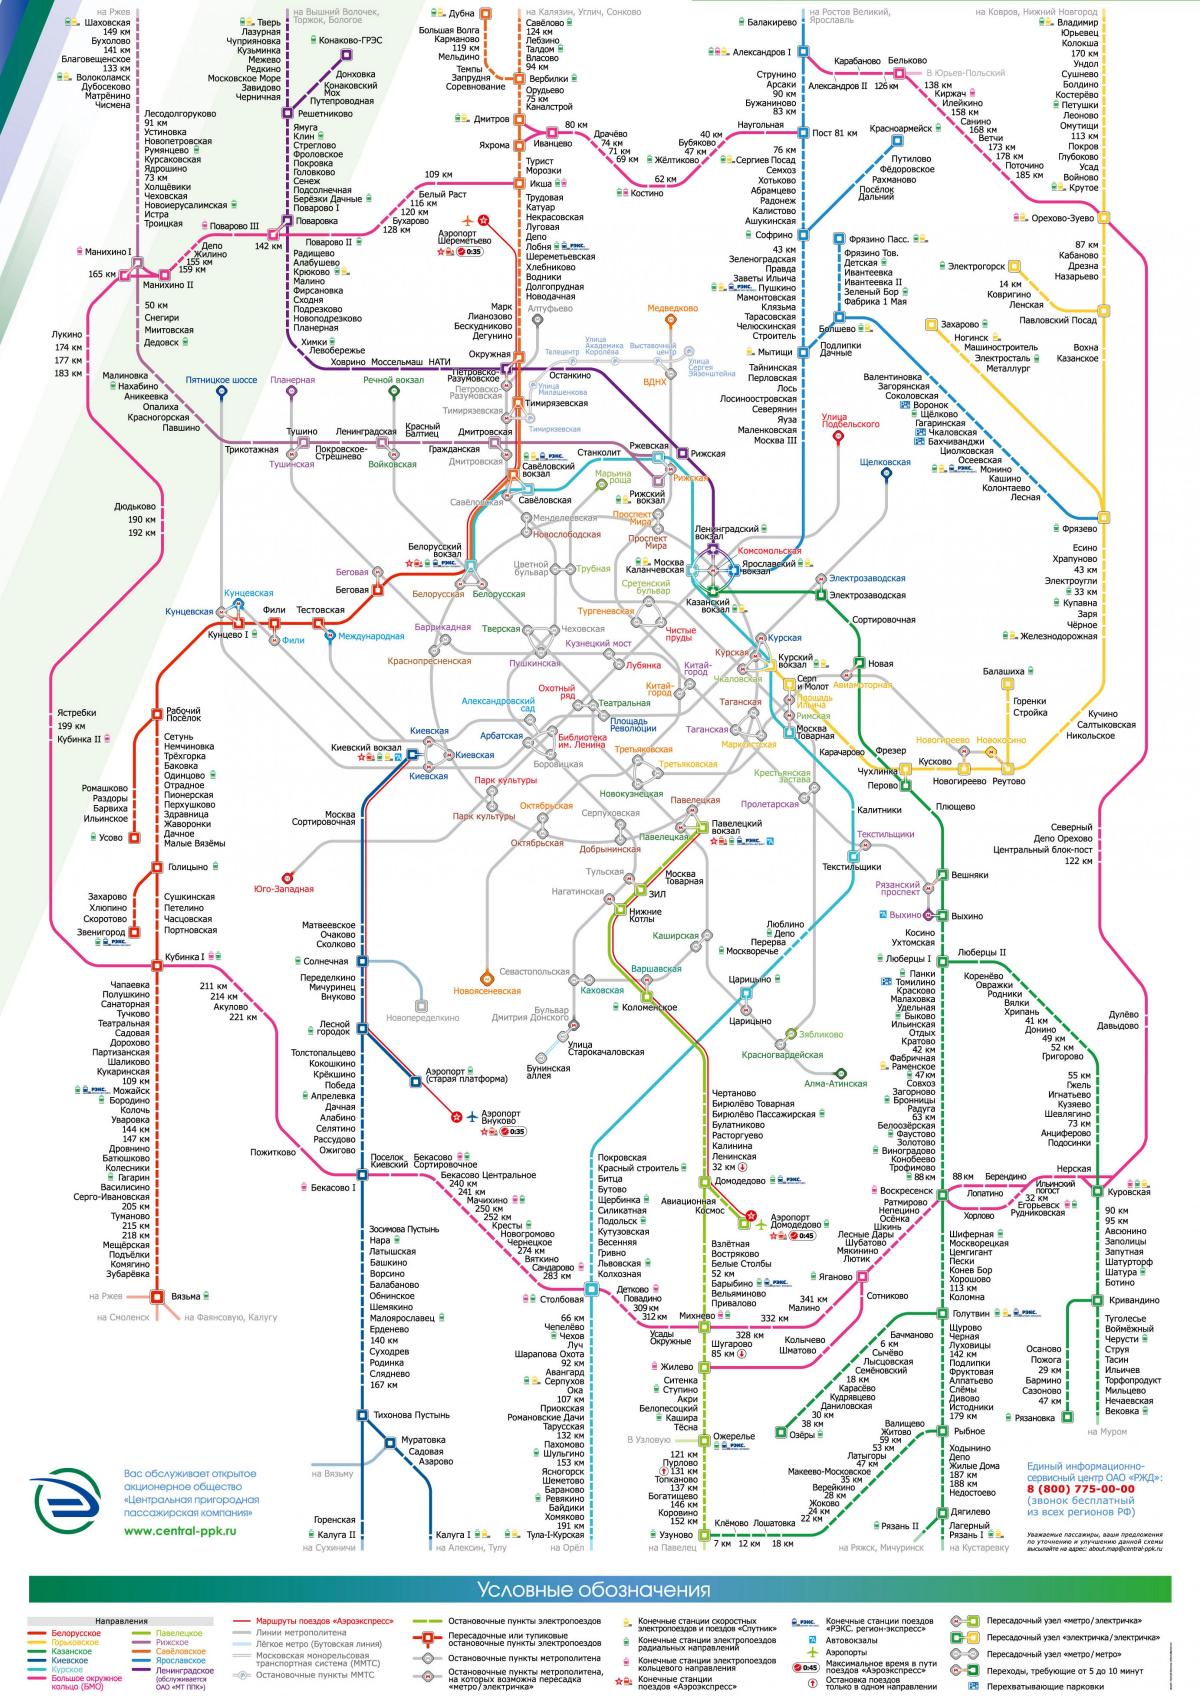 خريطة موسكفا القطار